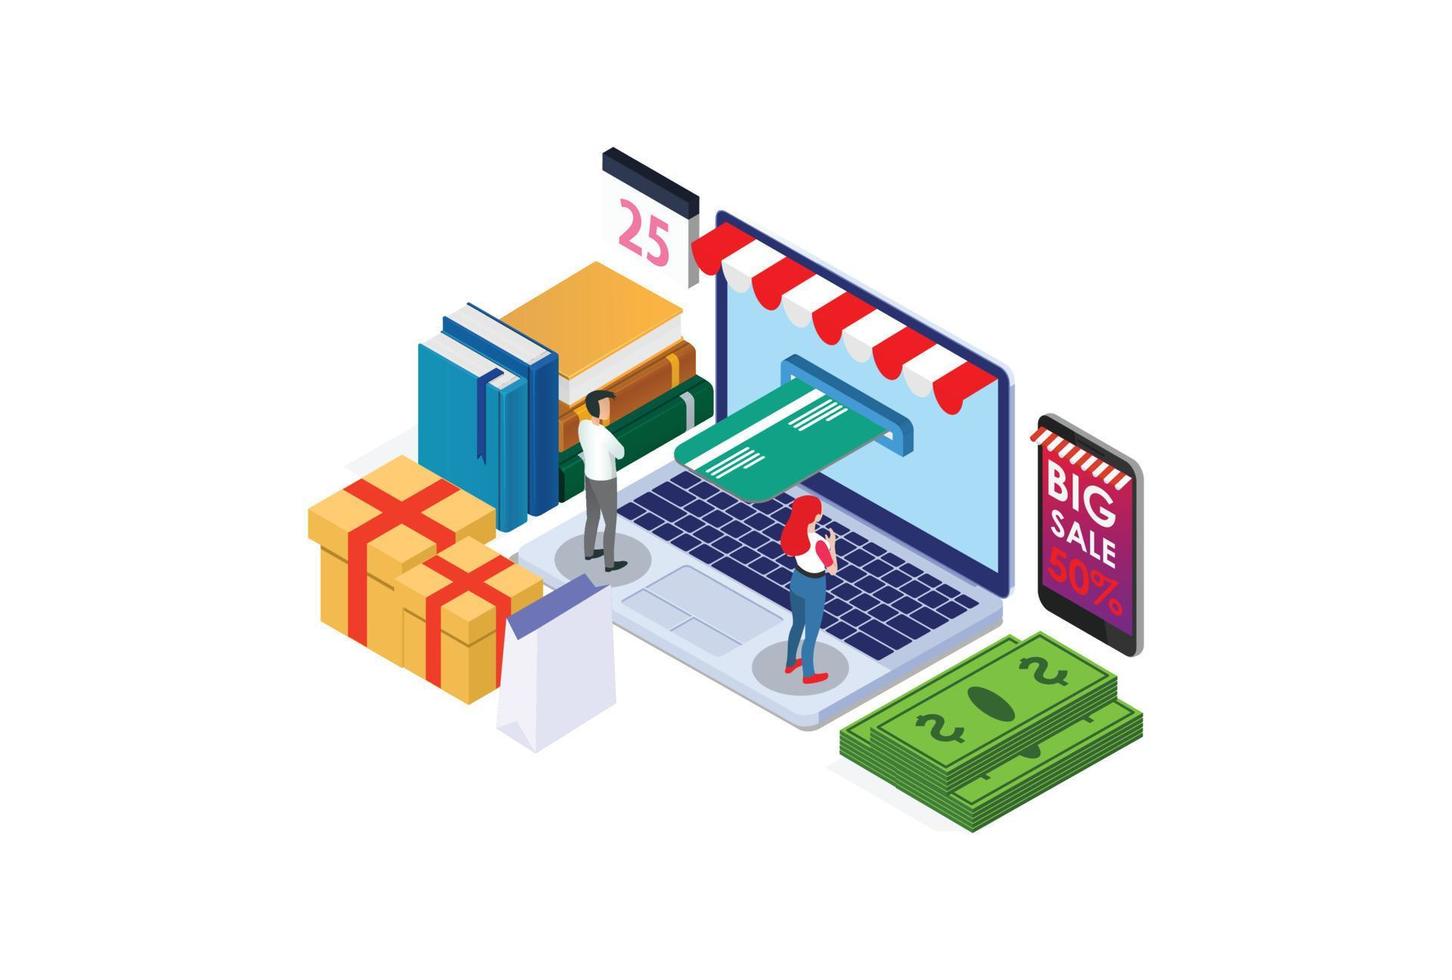 ilustración de entrega de compras en línea de comercio electrónico digital isométrica, adecuada para diagramas, infografías, ilustración de libros, activos de juegos y otros activos relacionados con gráficos vector